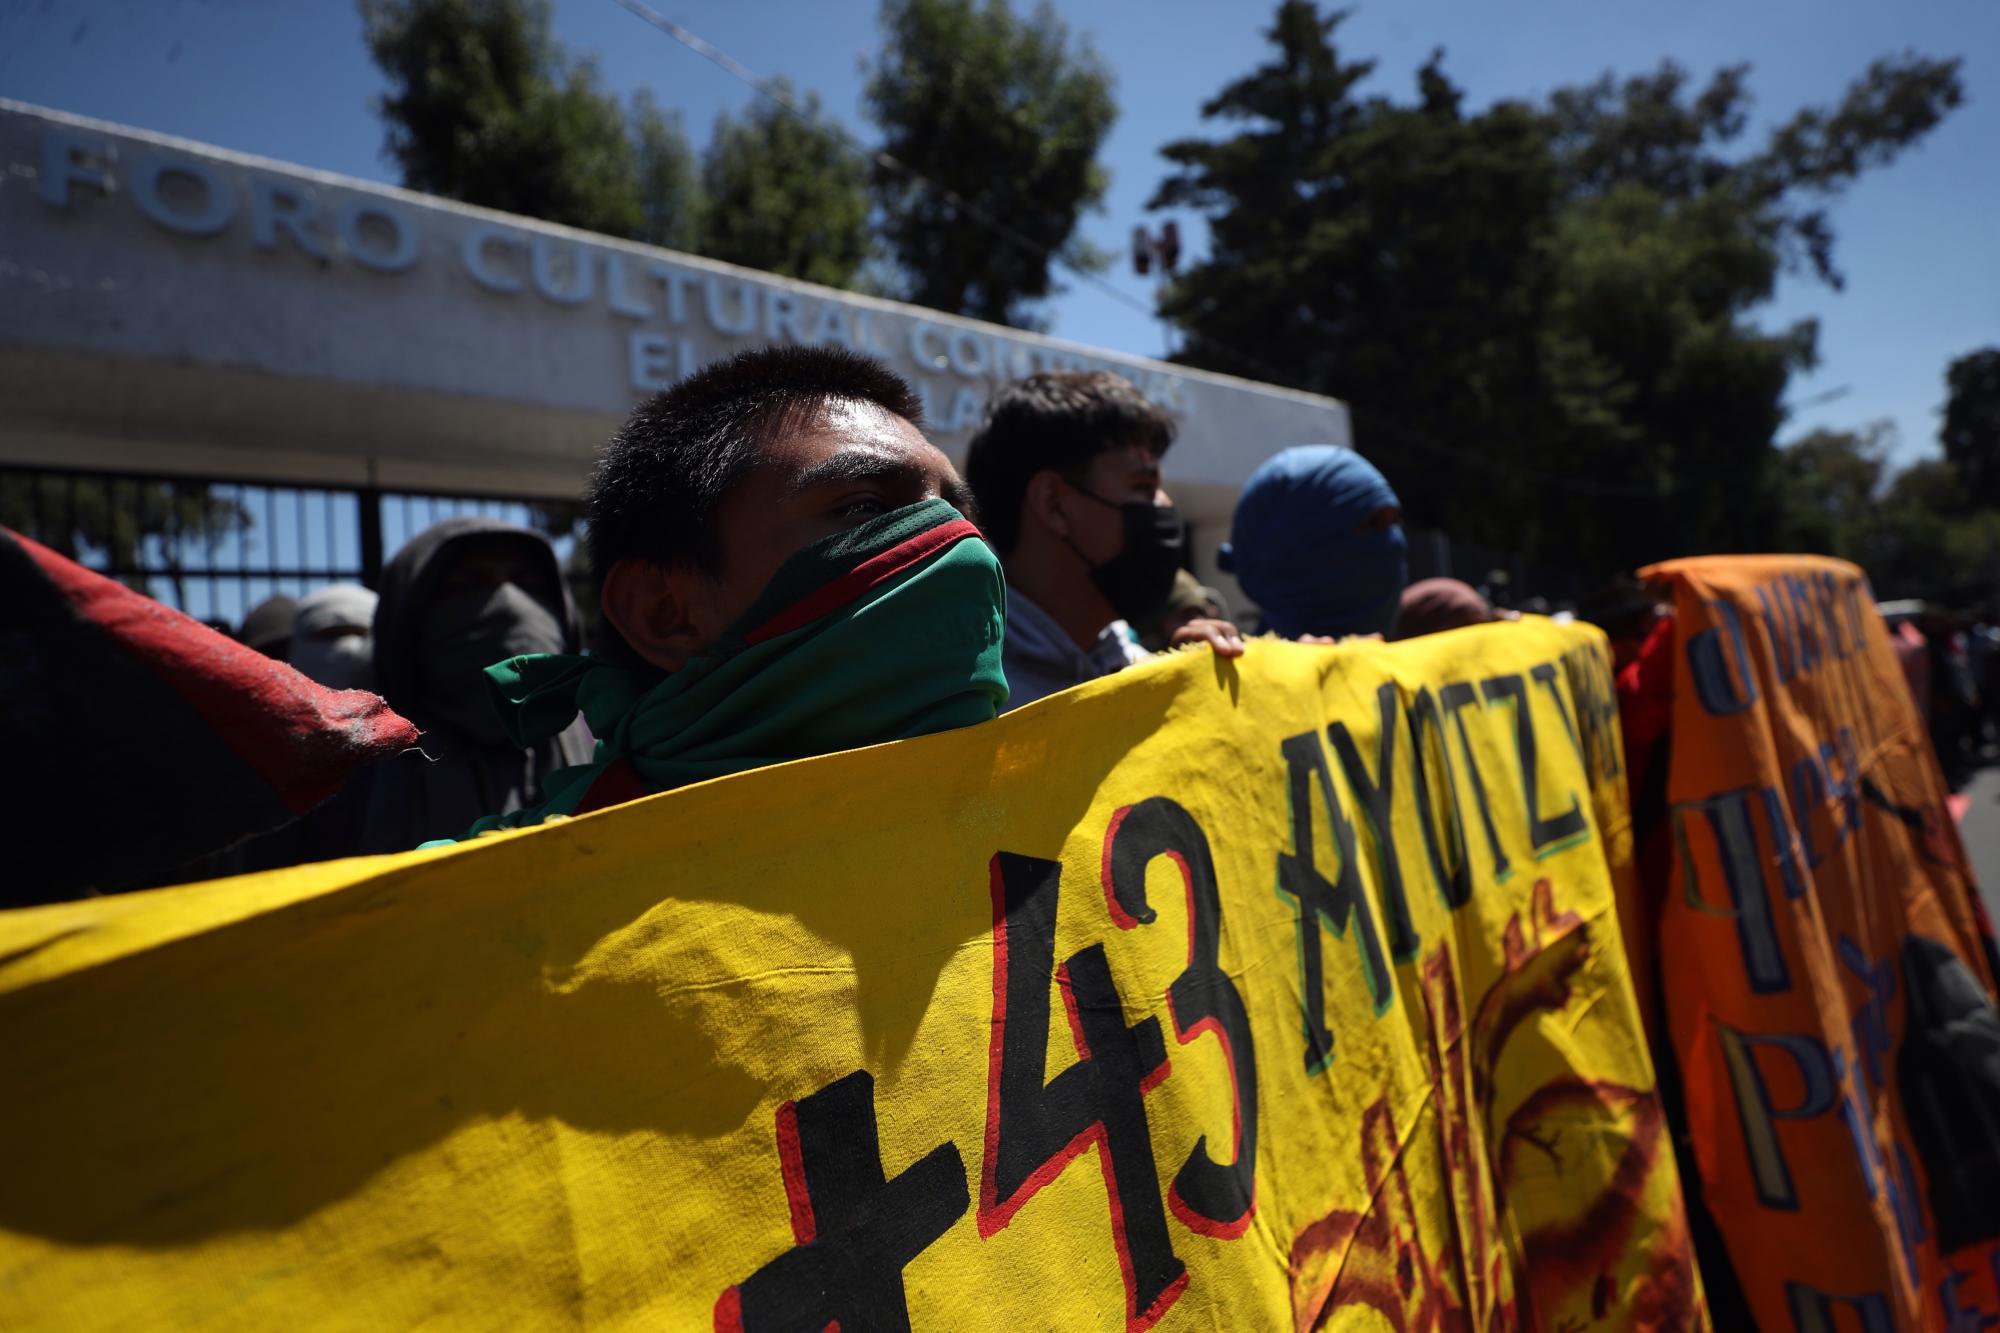 Informe señala que Guerreros Unidos sobornó a militares en el caso Ayotzinapa. Noticias en tiempo real